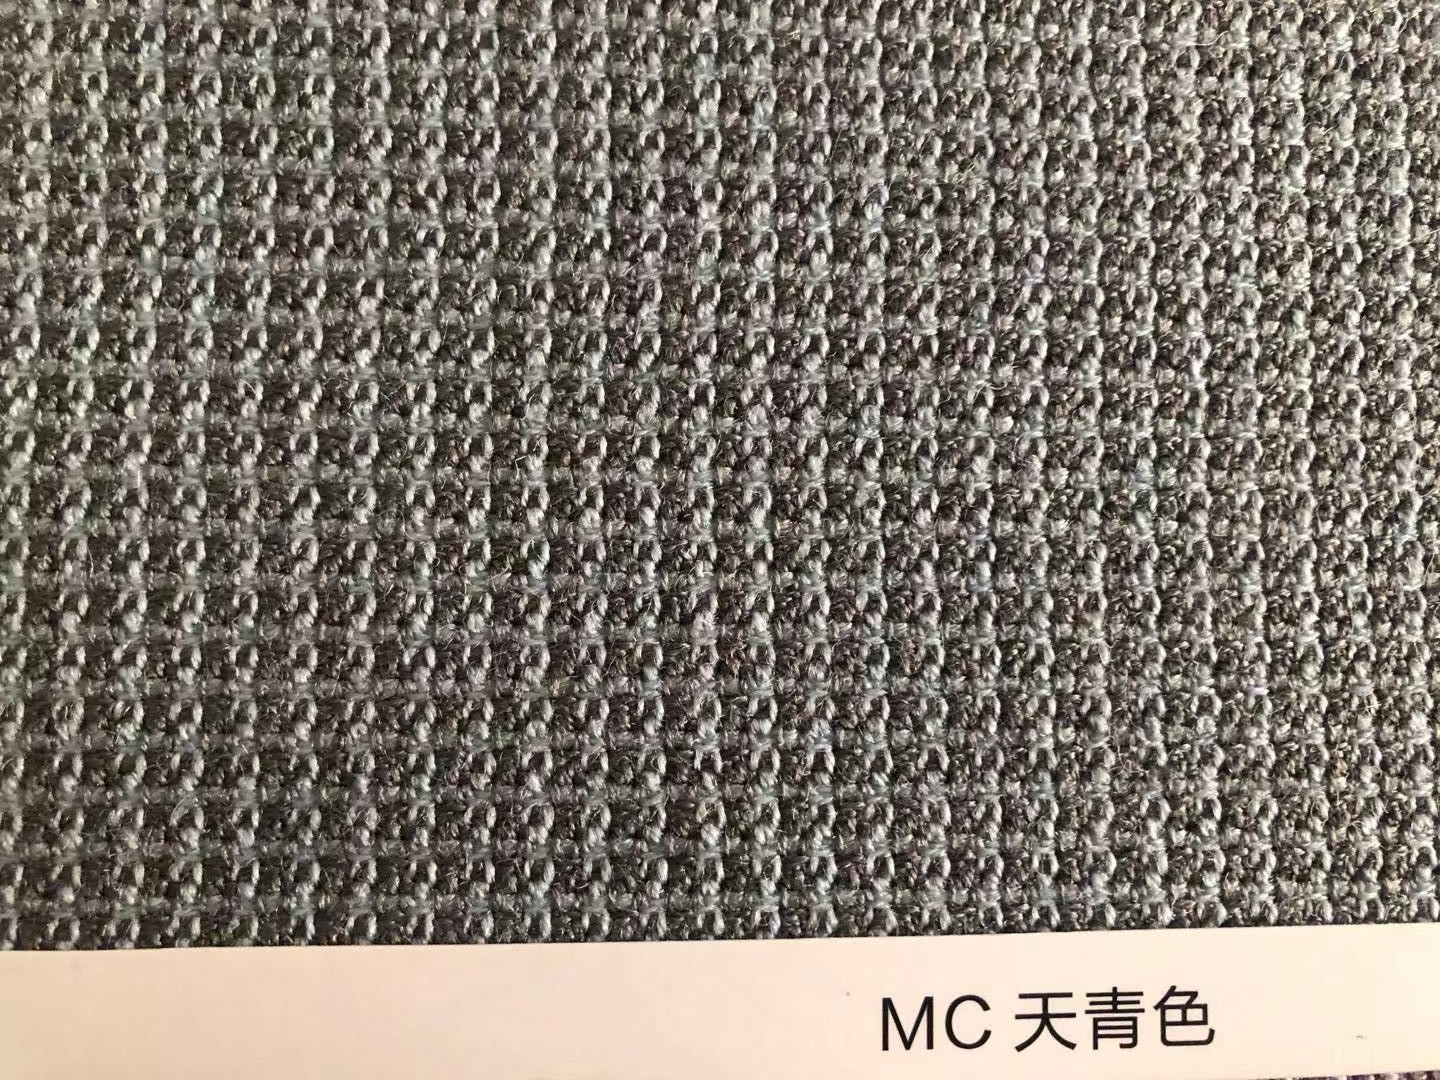 MC羊毛墙板天青色